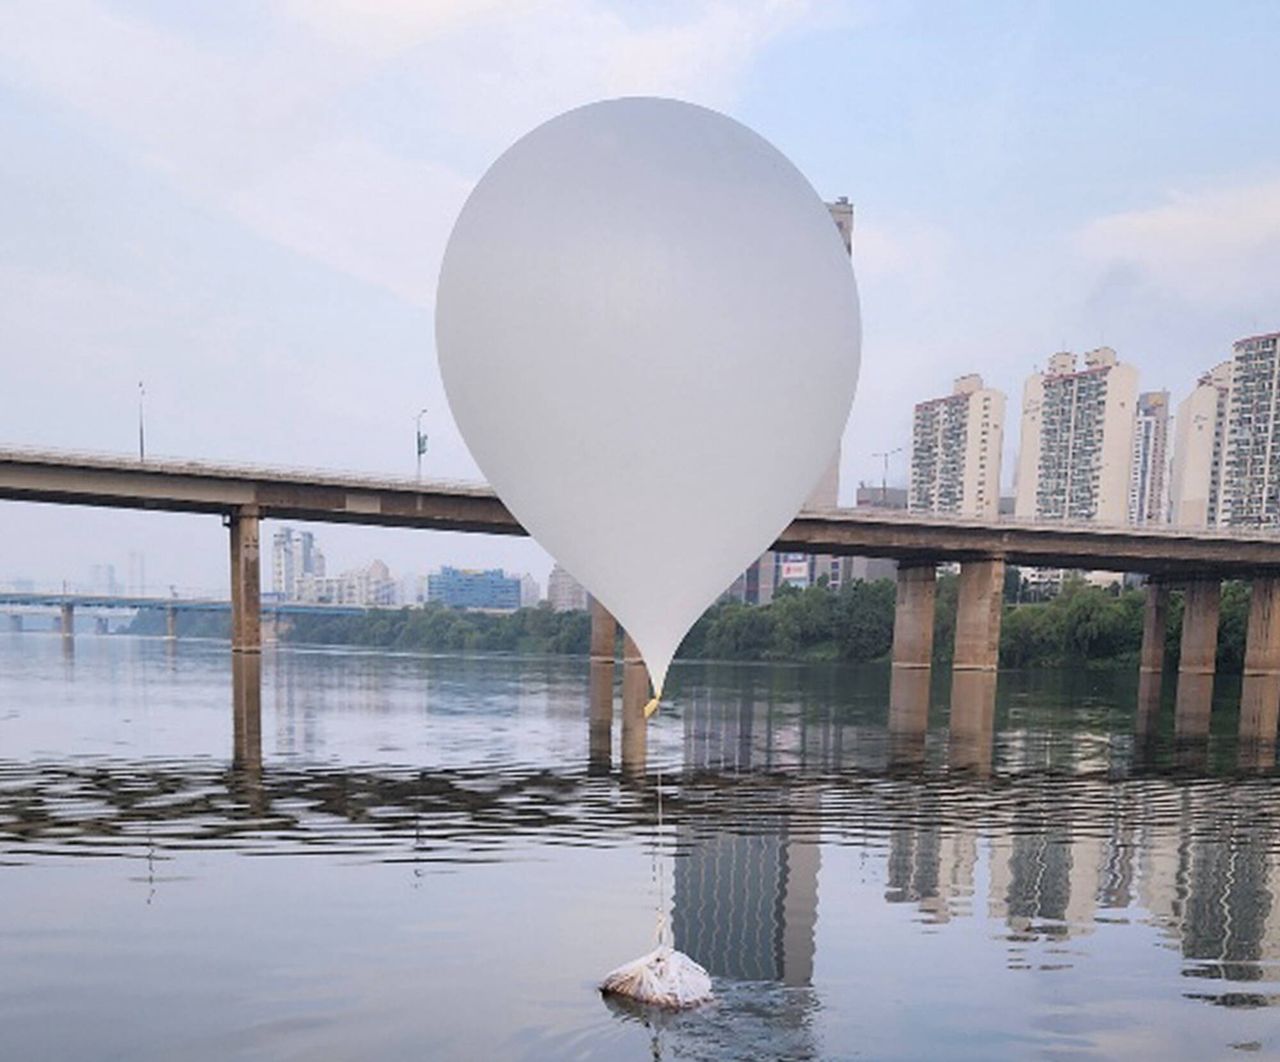 Korea Płn. znów wysłała balony ze śmieciami. To akt zemsty